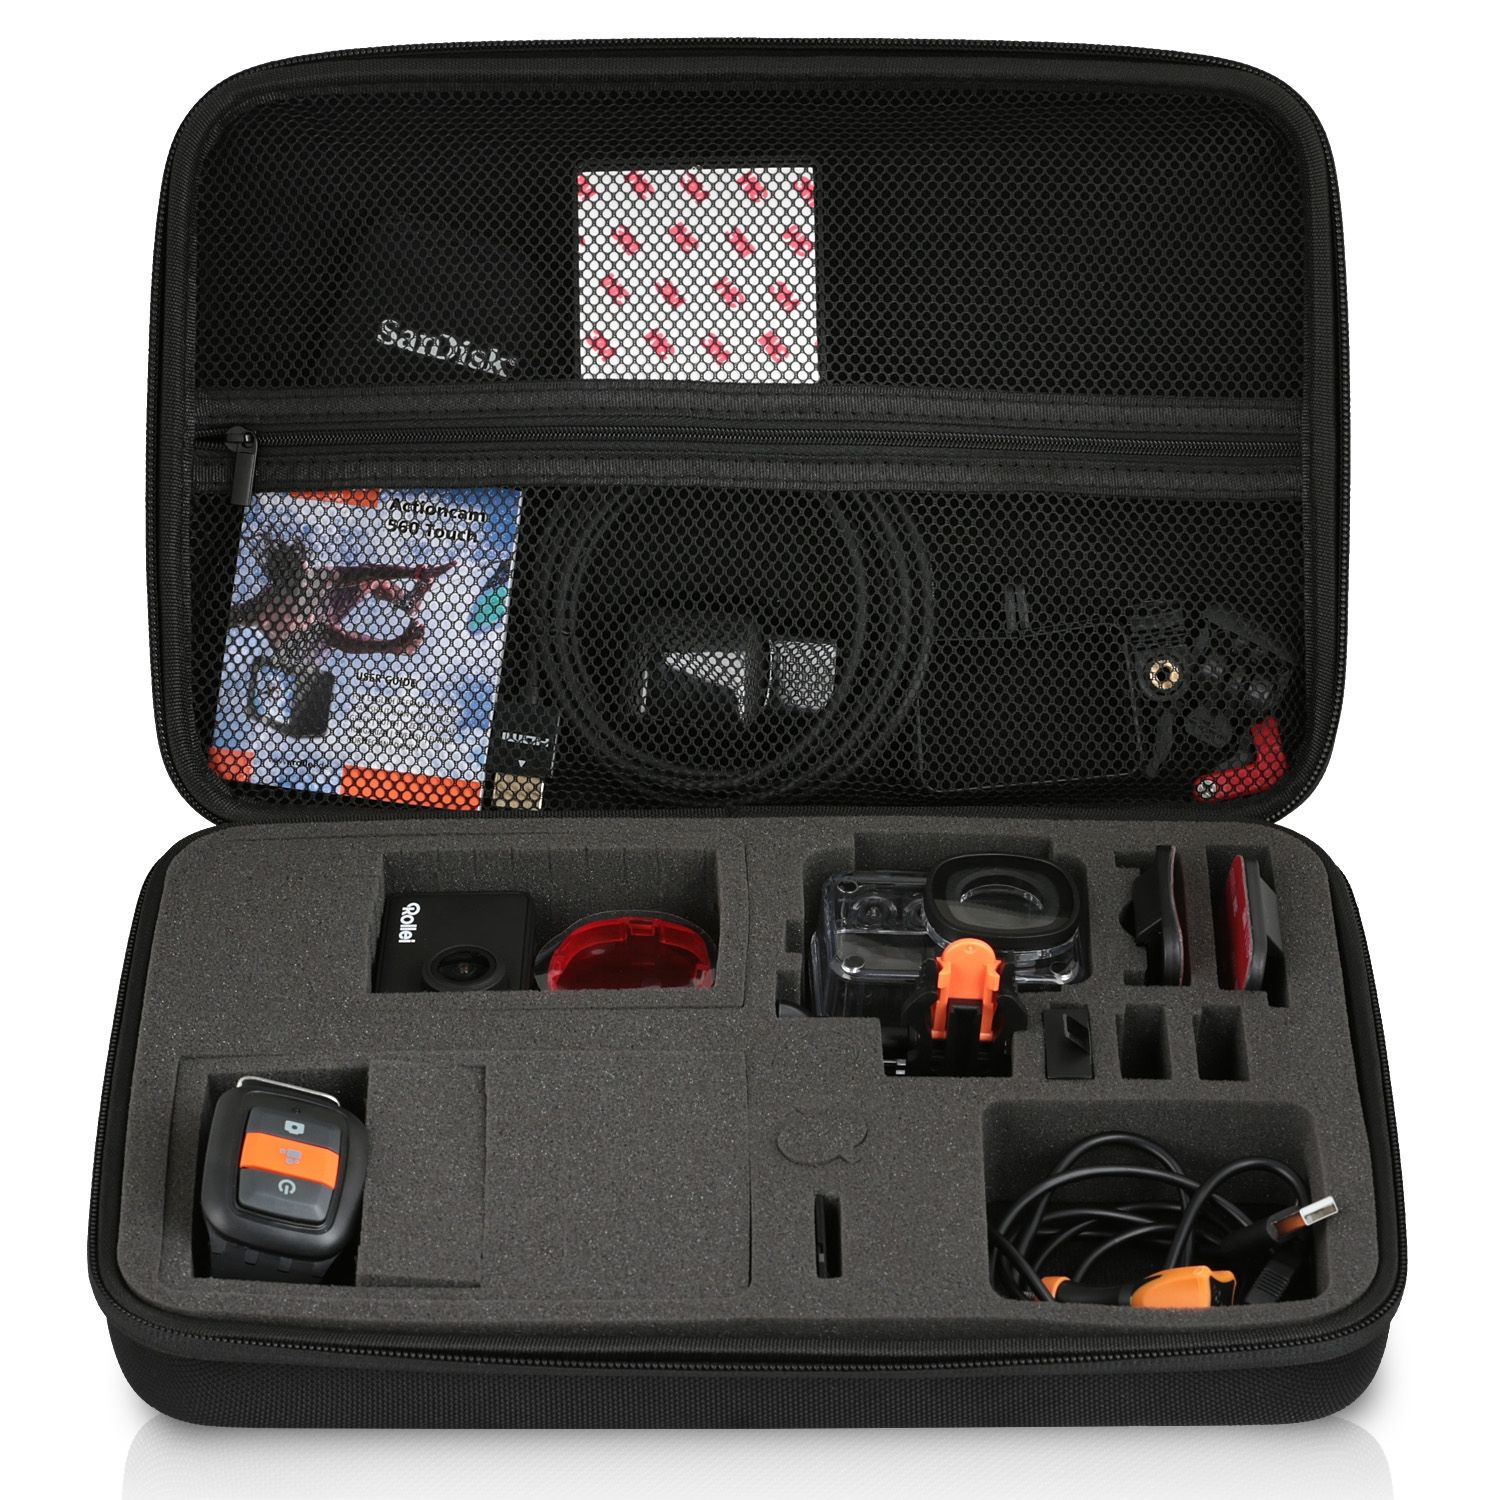 WICKED CHILI GOP / / Rollei mit Tasche 510 für schwarz 425 550 Case 530 Koffer / 560 kompatibel 540 / Schutztasche, Actioncam Kamera 